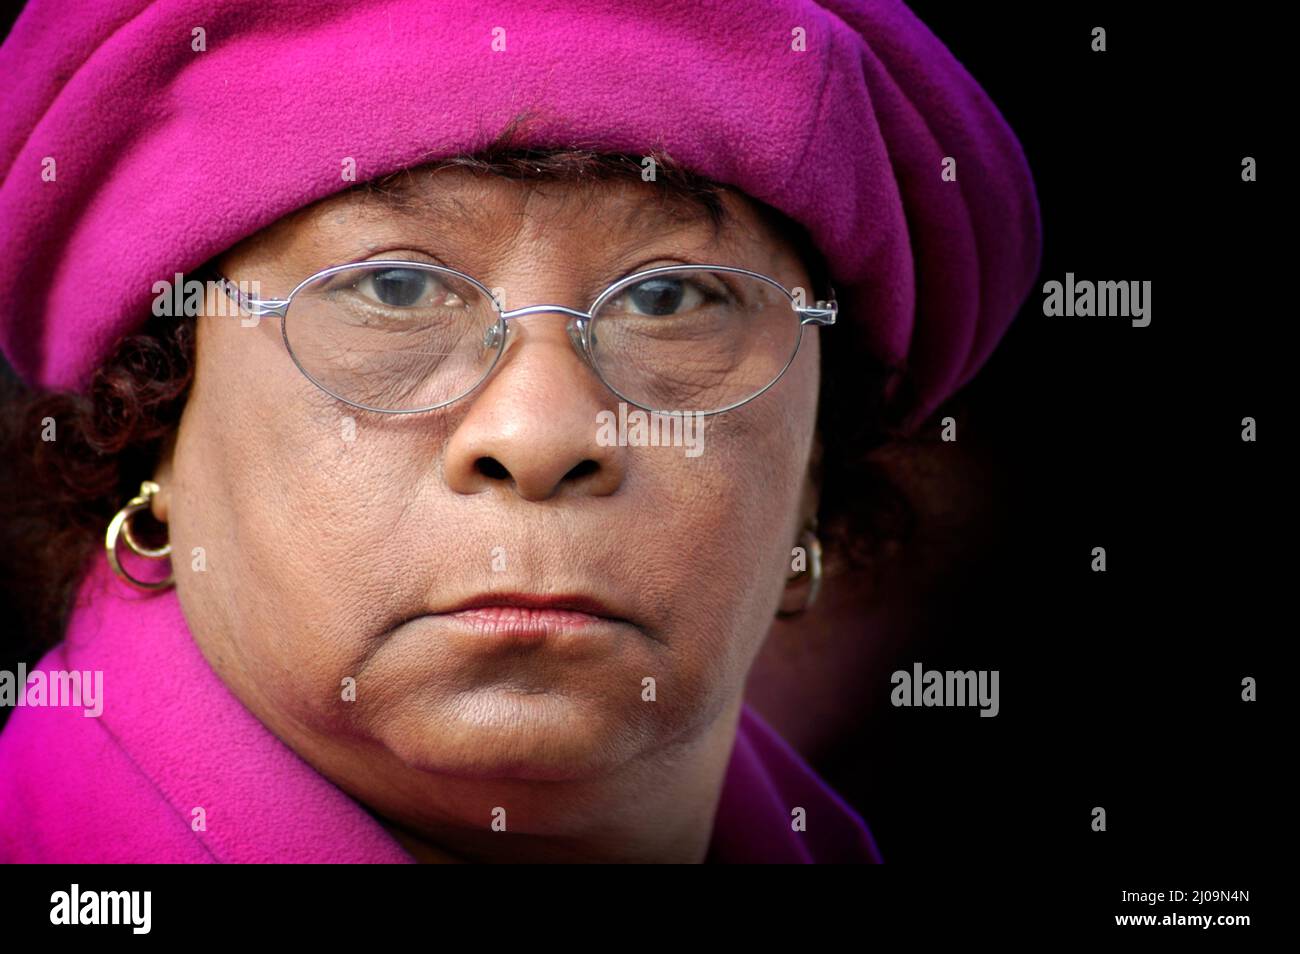 Le visage complet de la femme âgée, grand-mère de 22 ans, à la manifestation des droits civils dans des couleurs vives avec des lunettes et un espace de texte, est ethnique Banque D'Images